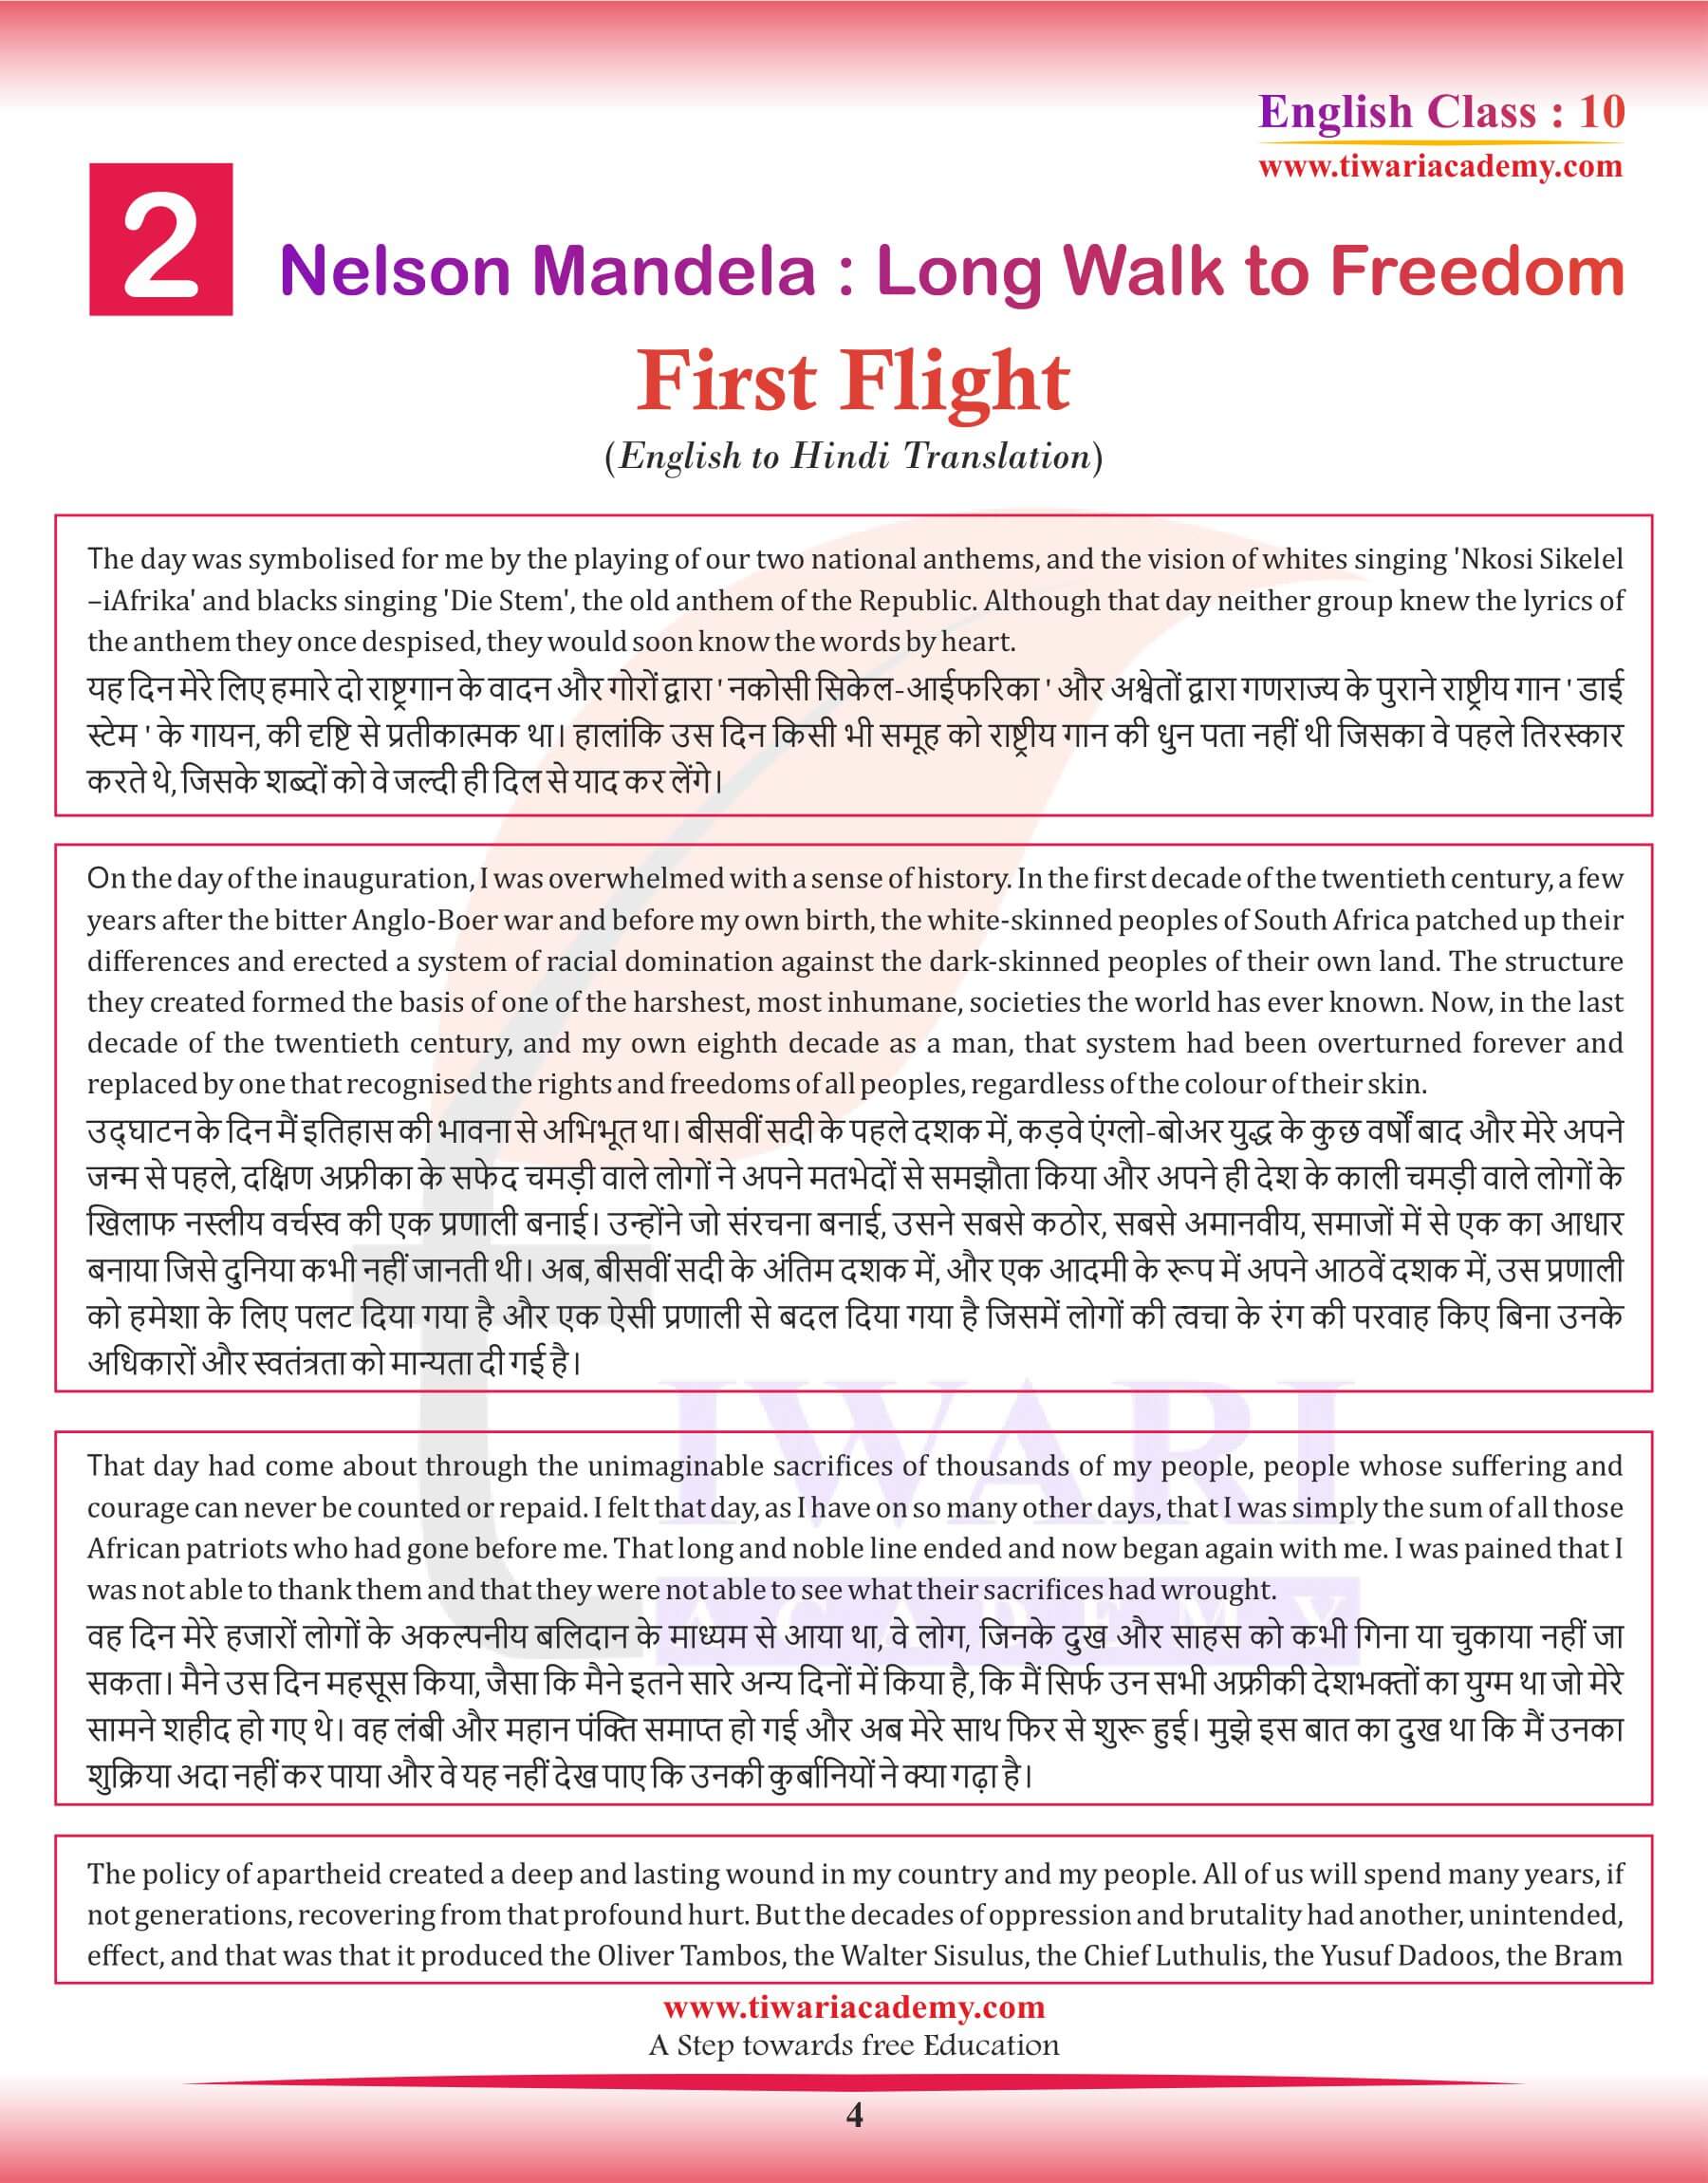 Class 10 English First Flight Chapter 2 English to Hindi Translation